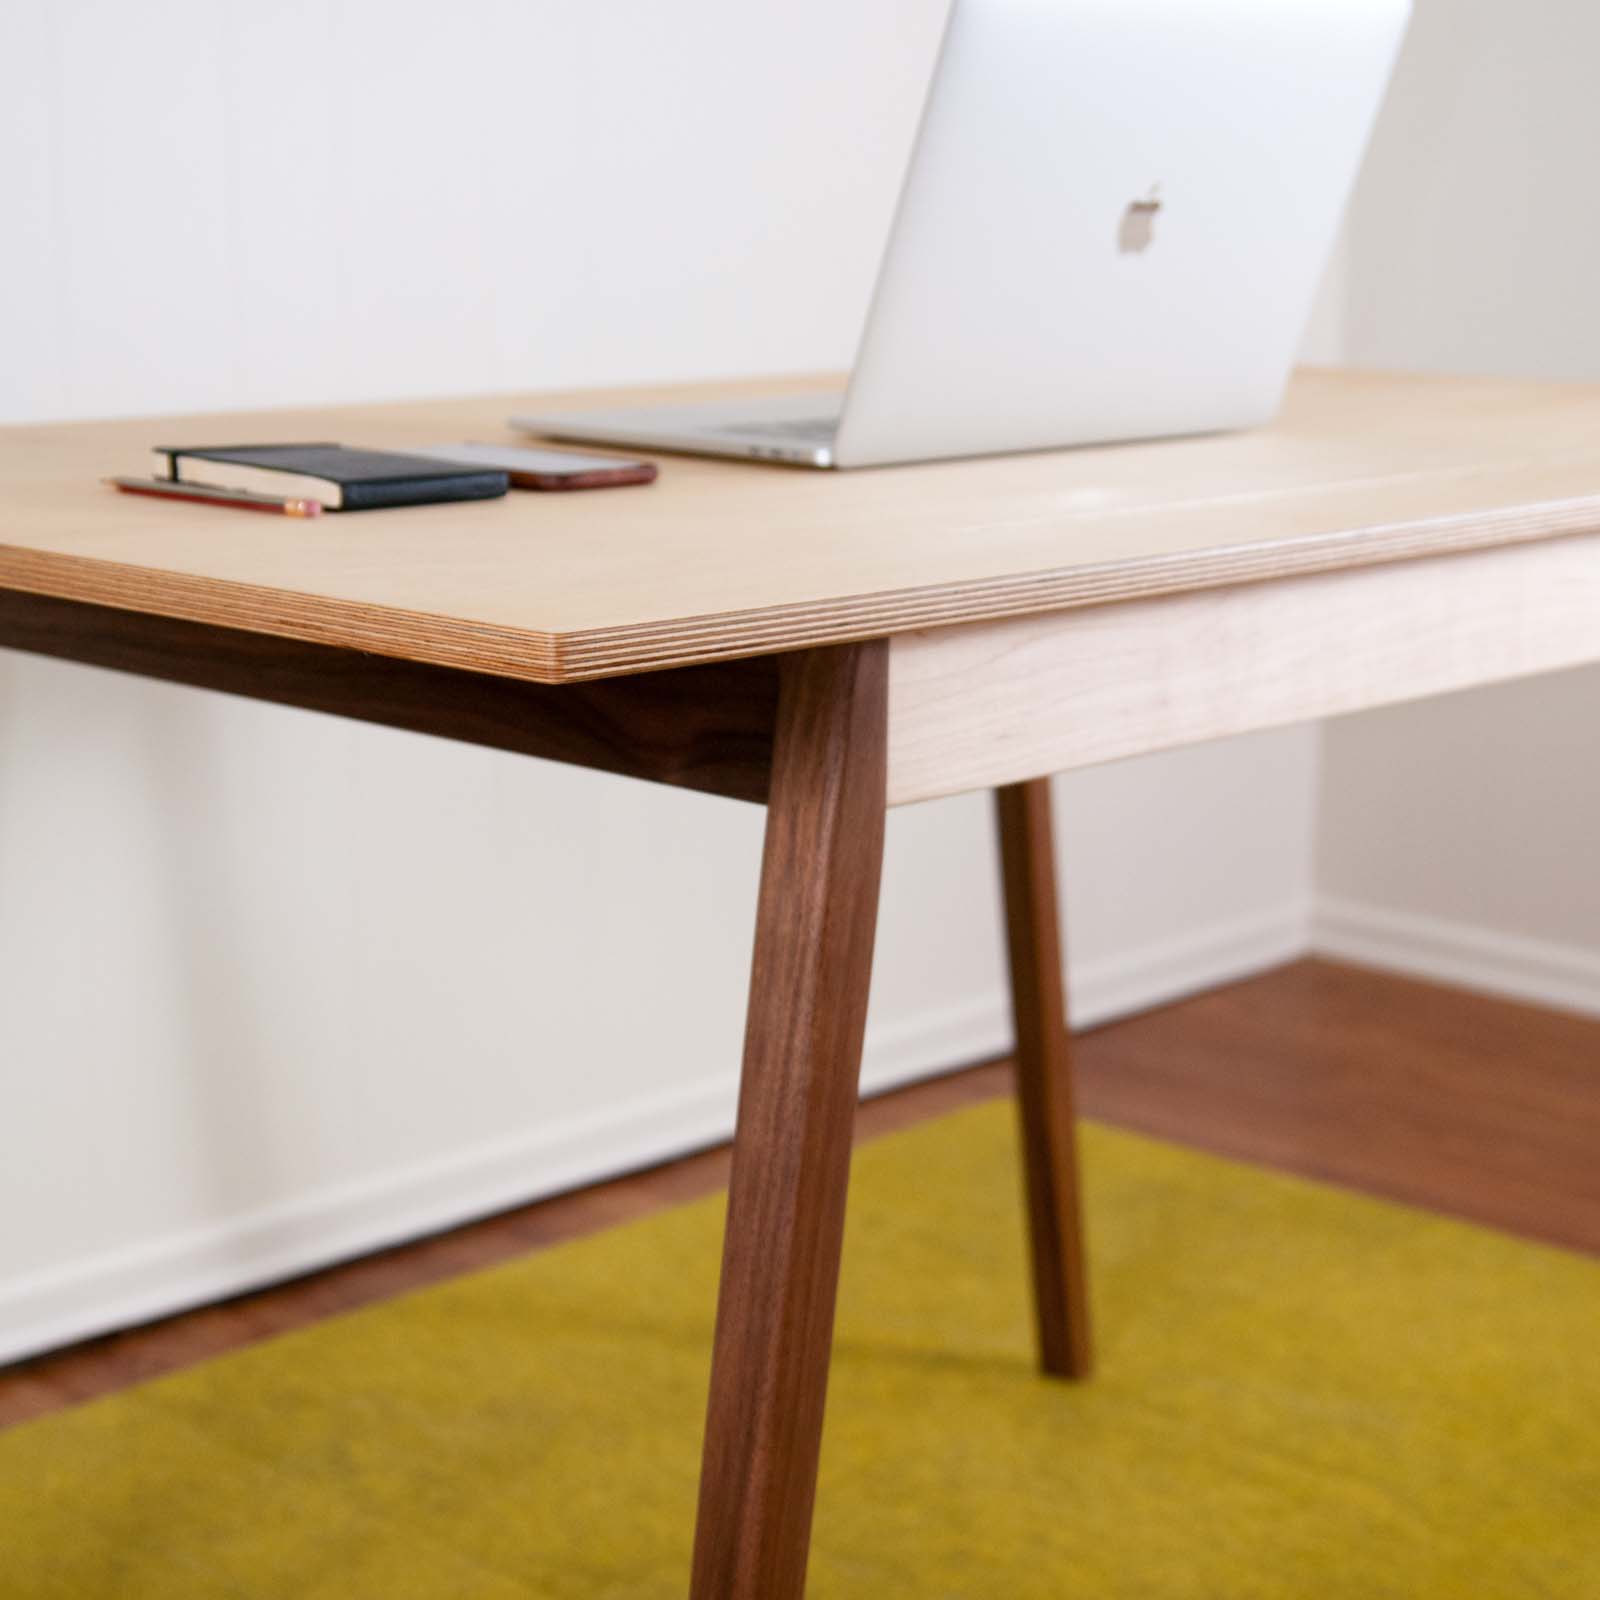 Desk v.1 with laptop